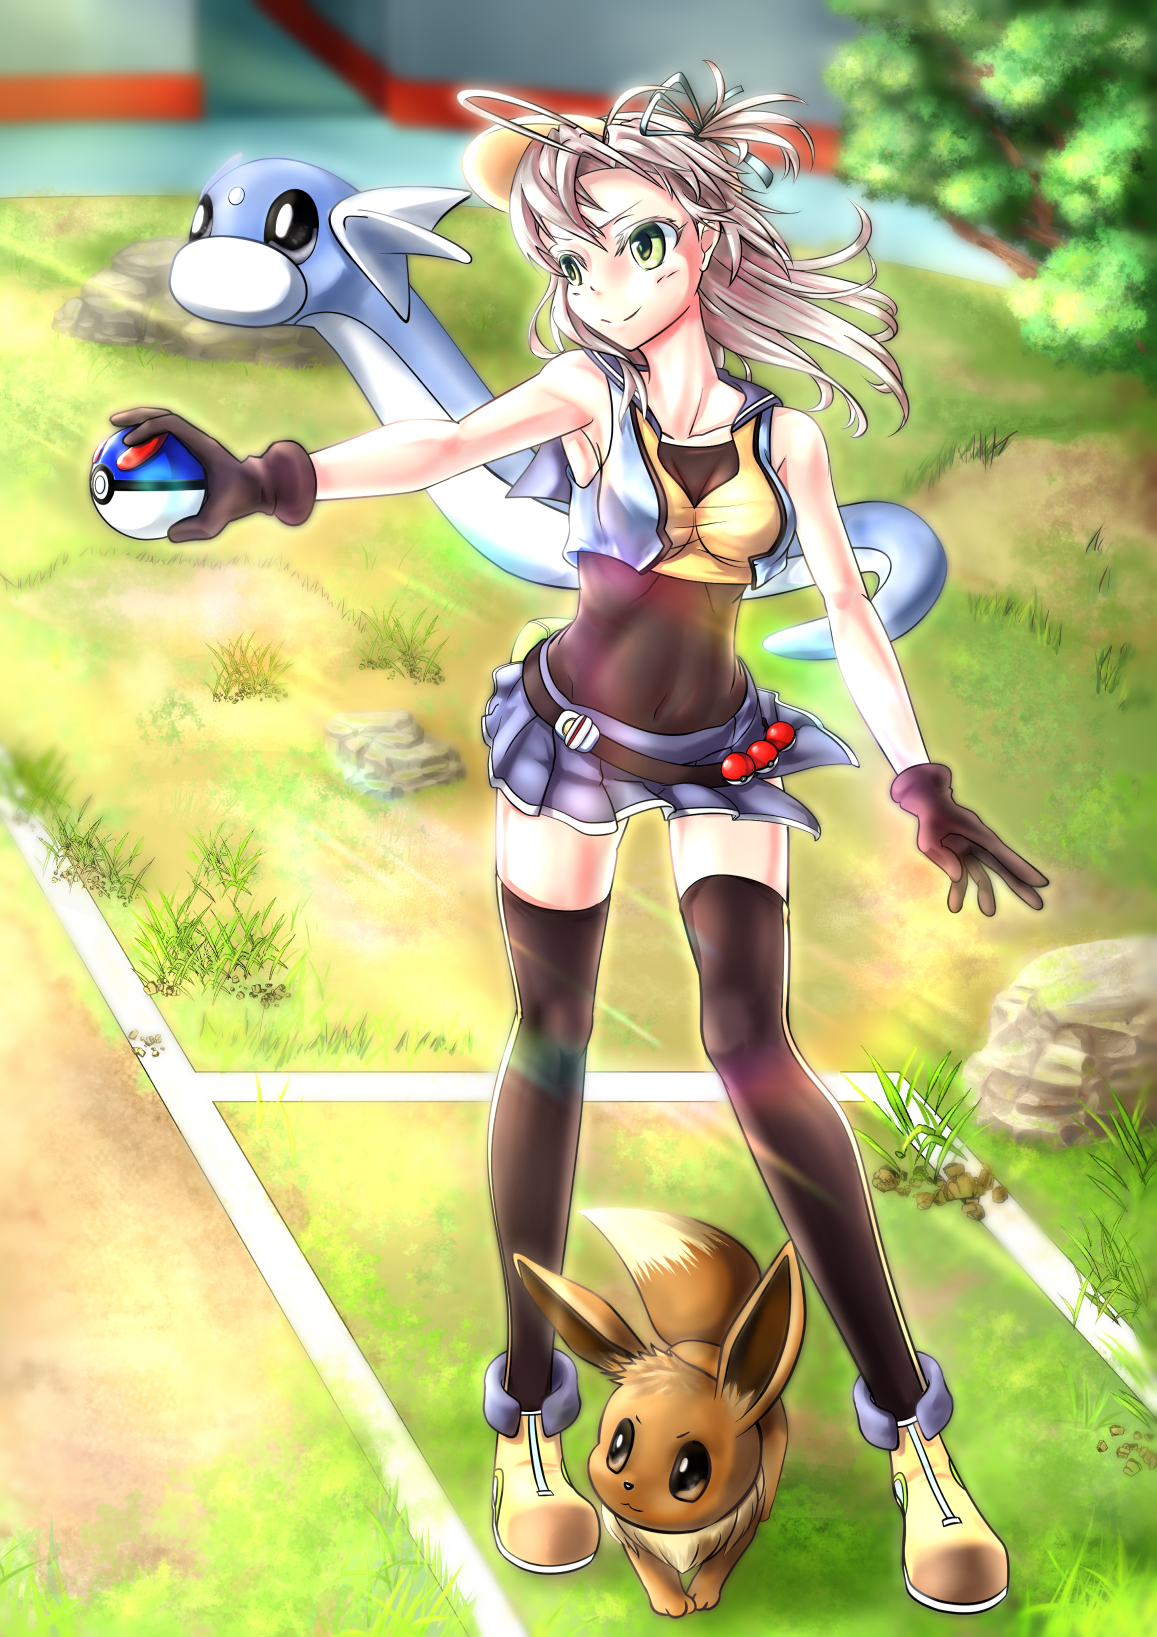 Anime 1157x1637 anime anime girls Pokémon Pokémon Go Pokémon trainers long hair gray hair skirt stockings